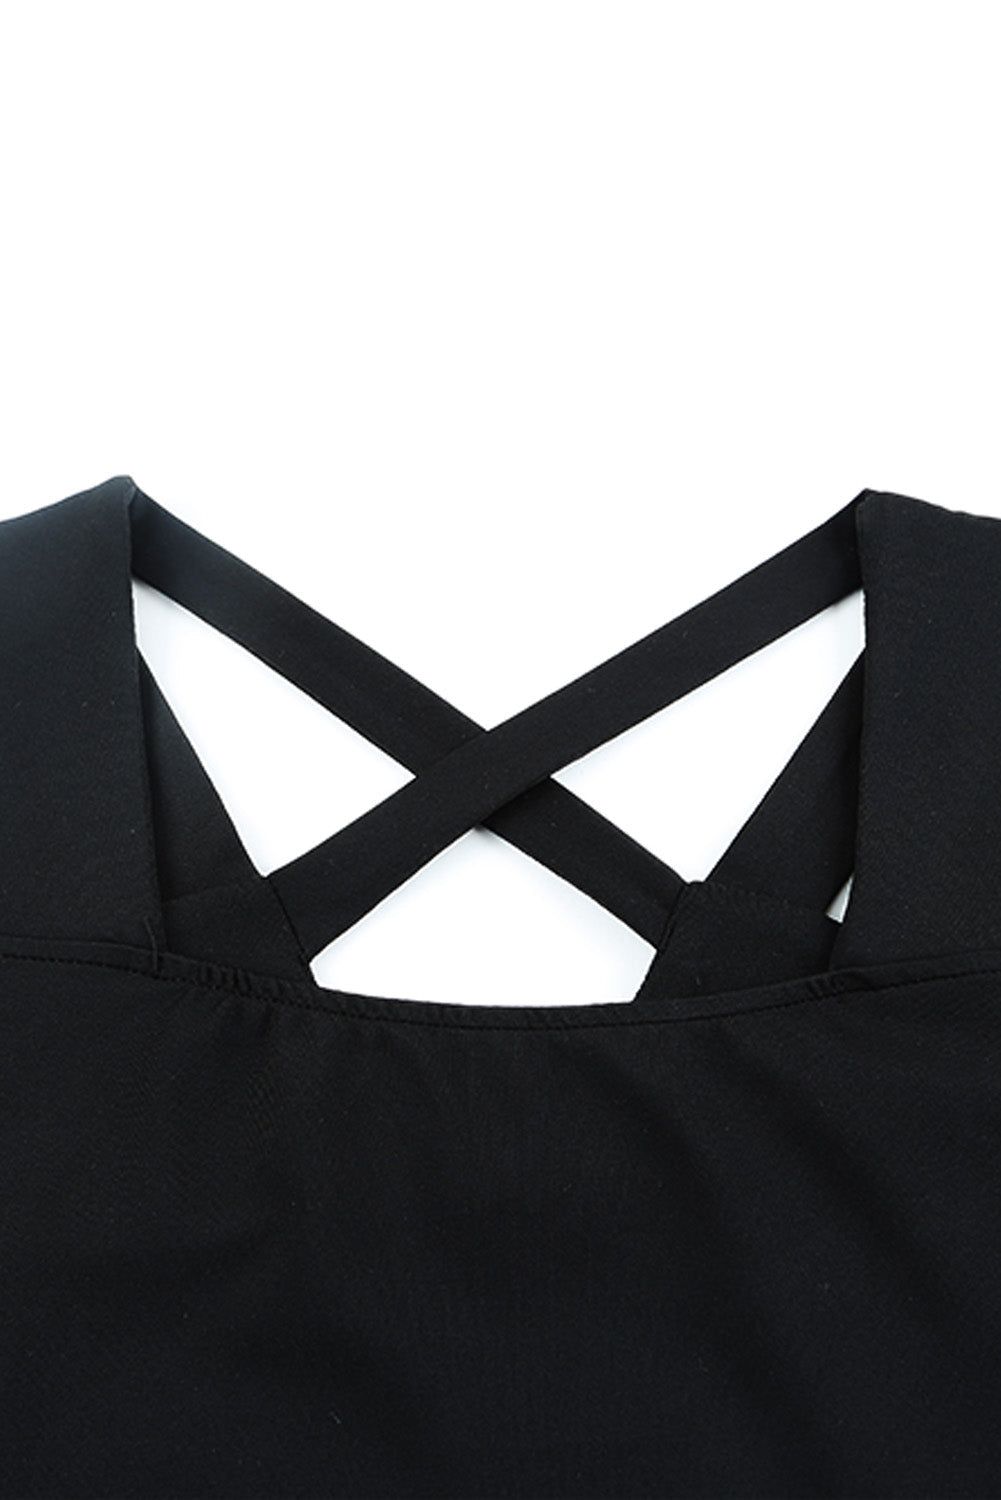 Black Criss-Cross Cut Out Short Sleeve Top